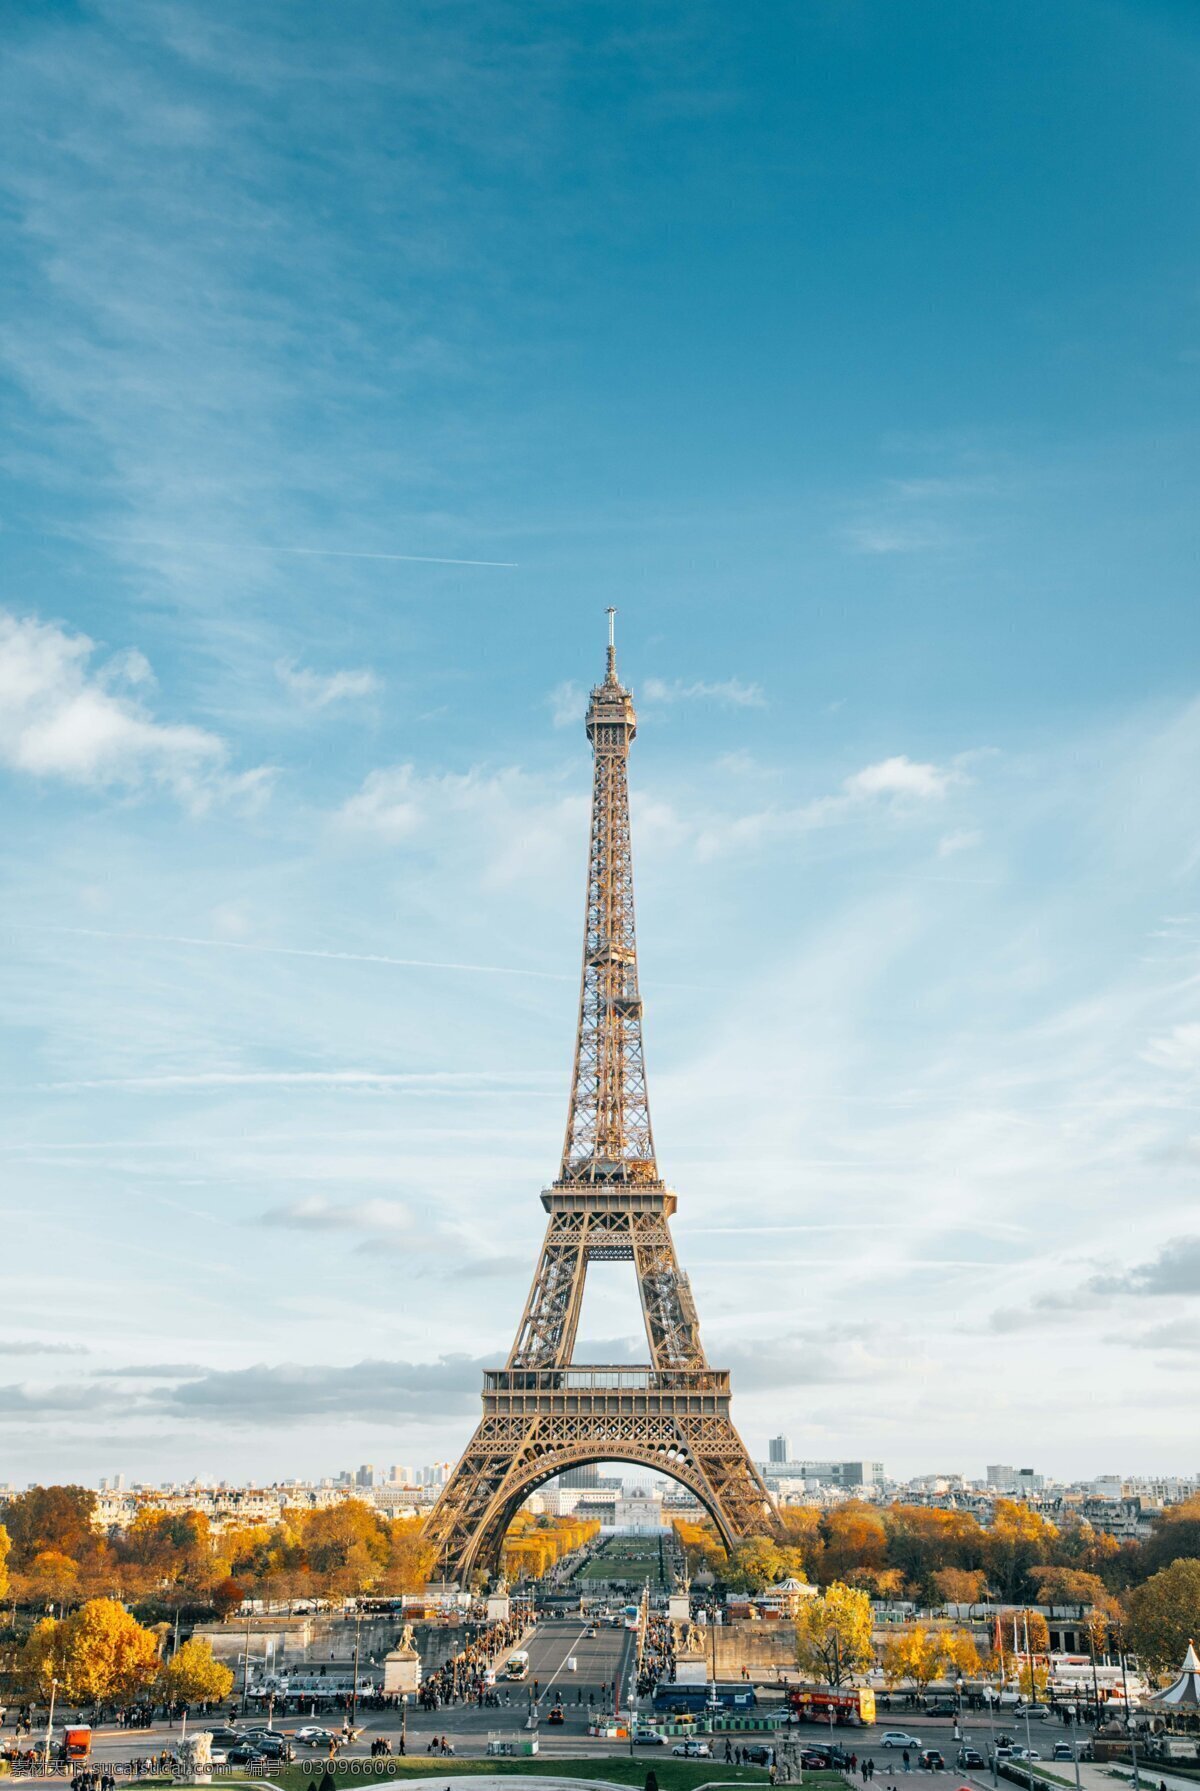 艾菲尔铁塔 文物古迹 风景名胜 欧洲 法国 巴黎 旅游 建筑风景 建筑风光 自然景观 建筑景观 旅游摄影 国外旅游